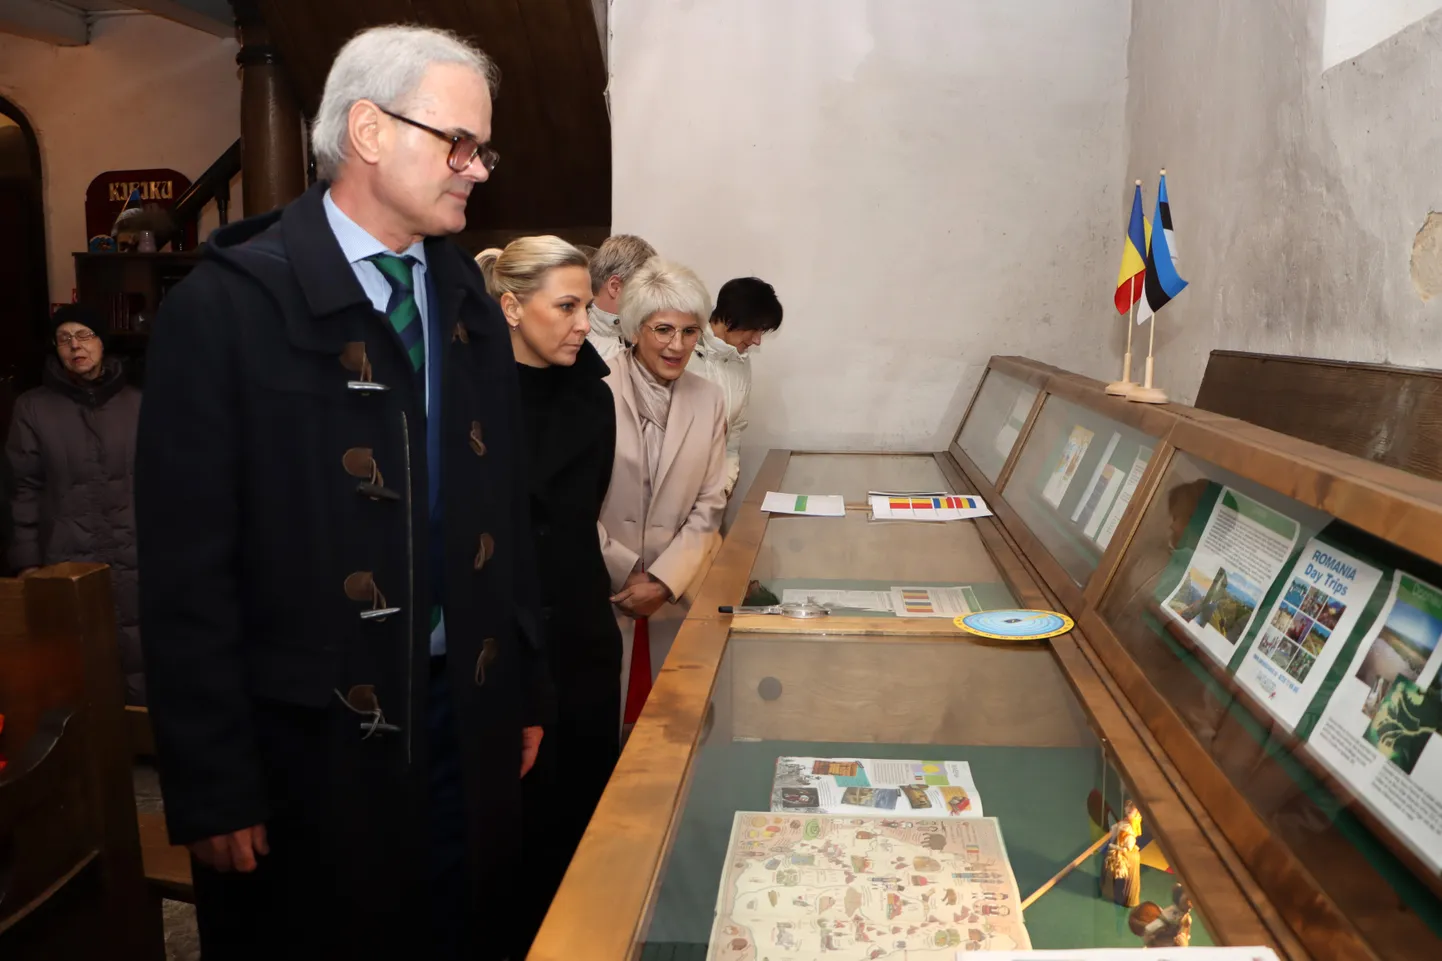 Особый интерес у посла вызвали экспонаты о Румынии, выставленные местными жителями.